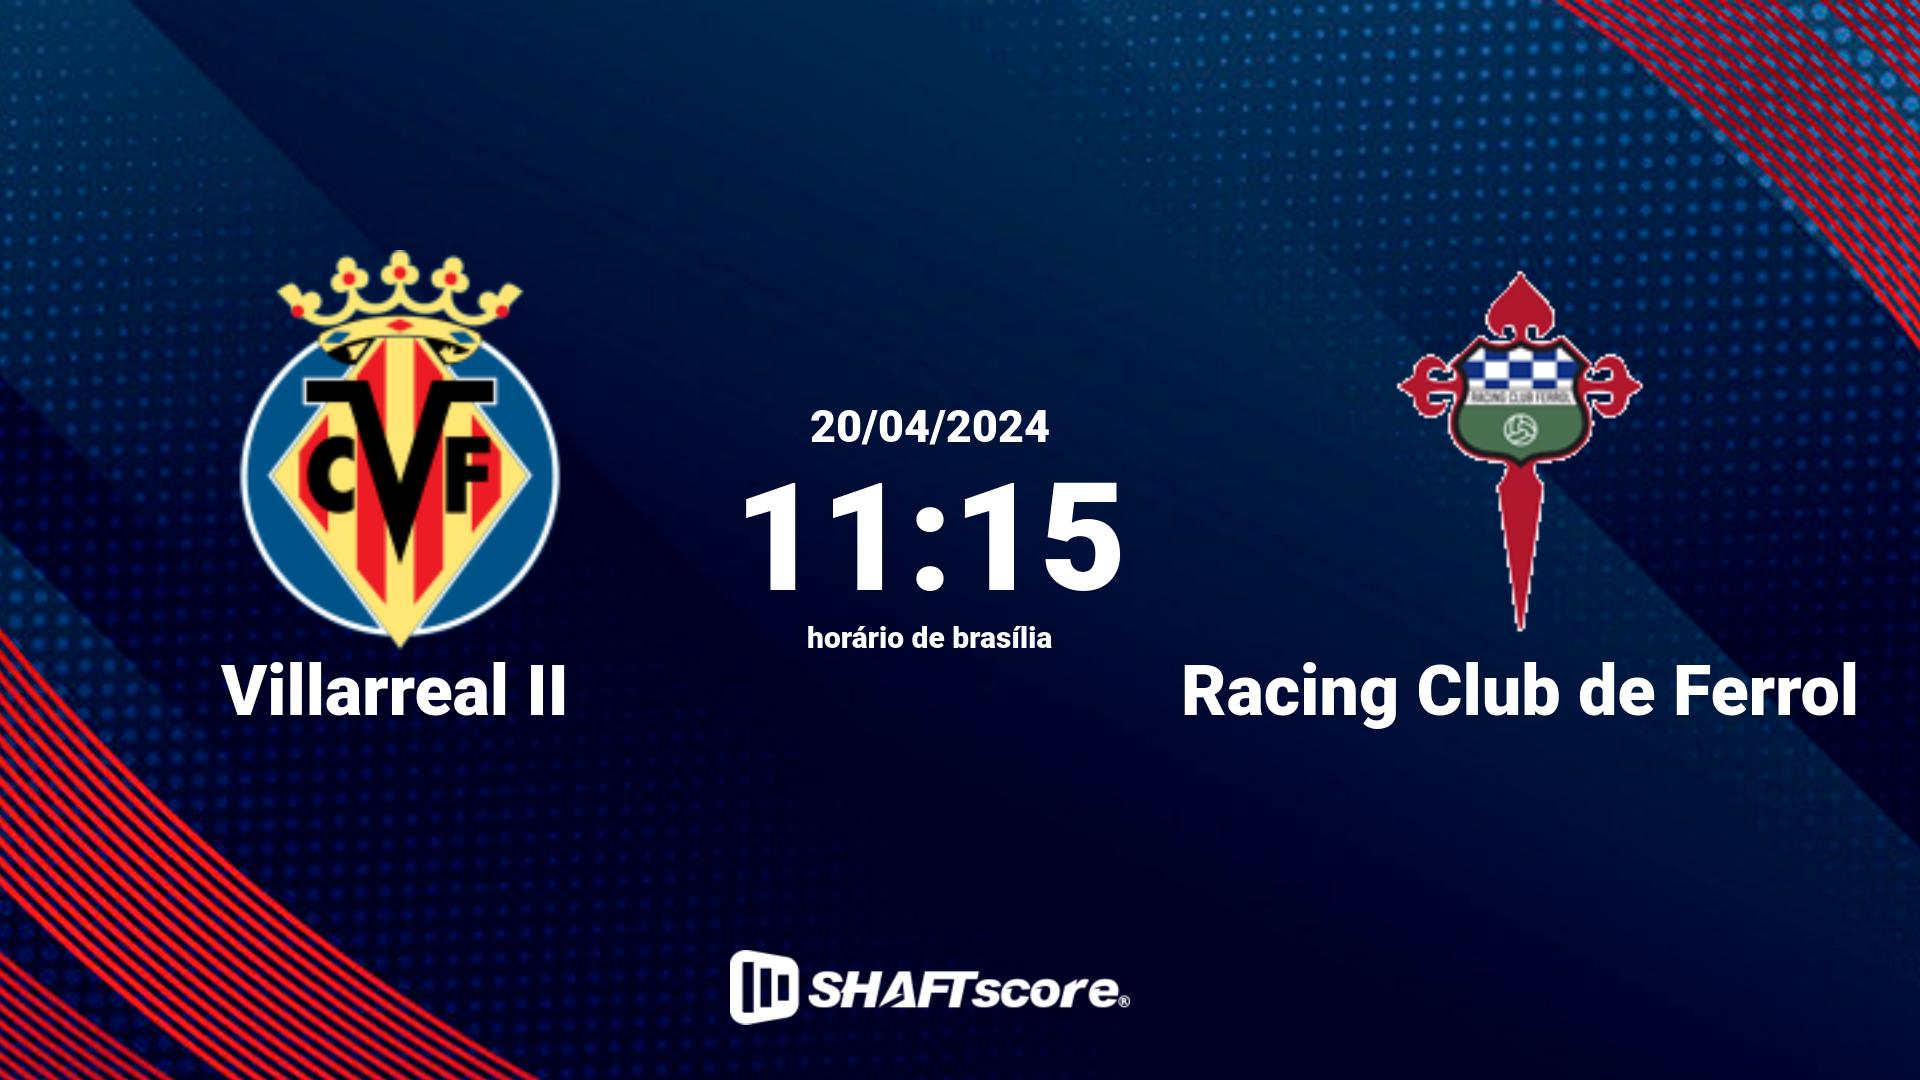 Estatísticas do jogo Villarreal II vs Racing Club de Ferrol 20.04 11:15